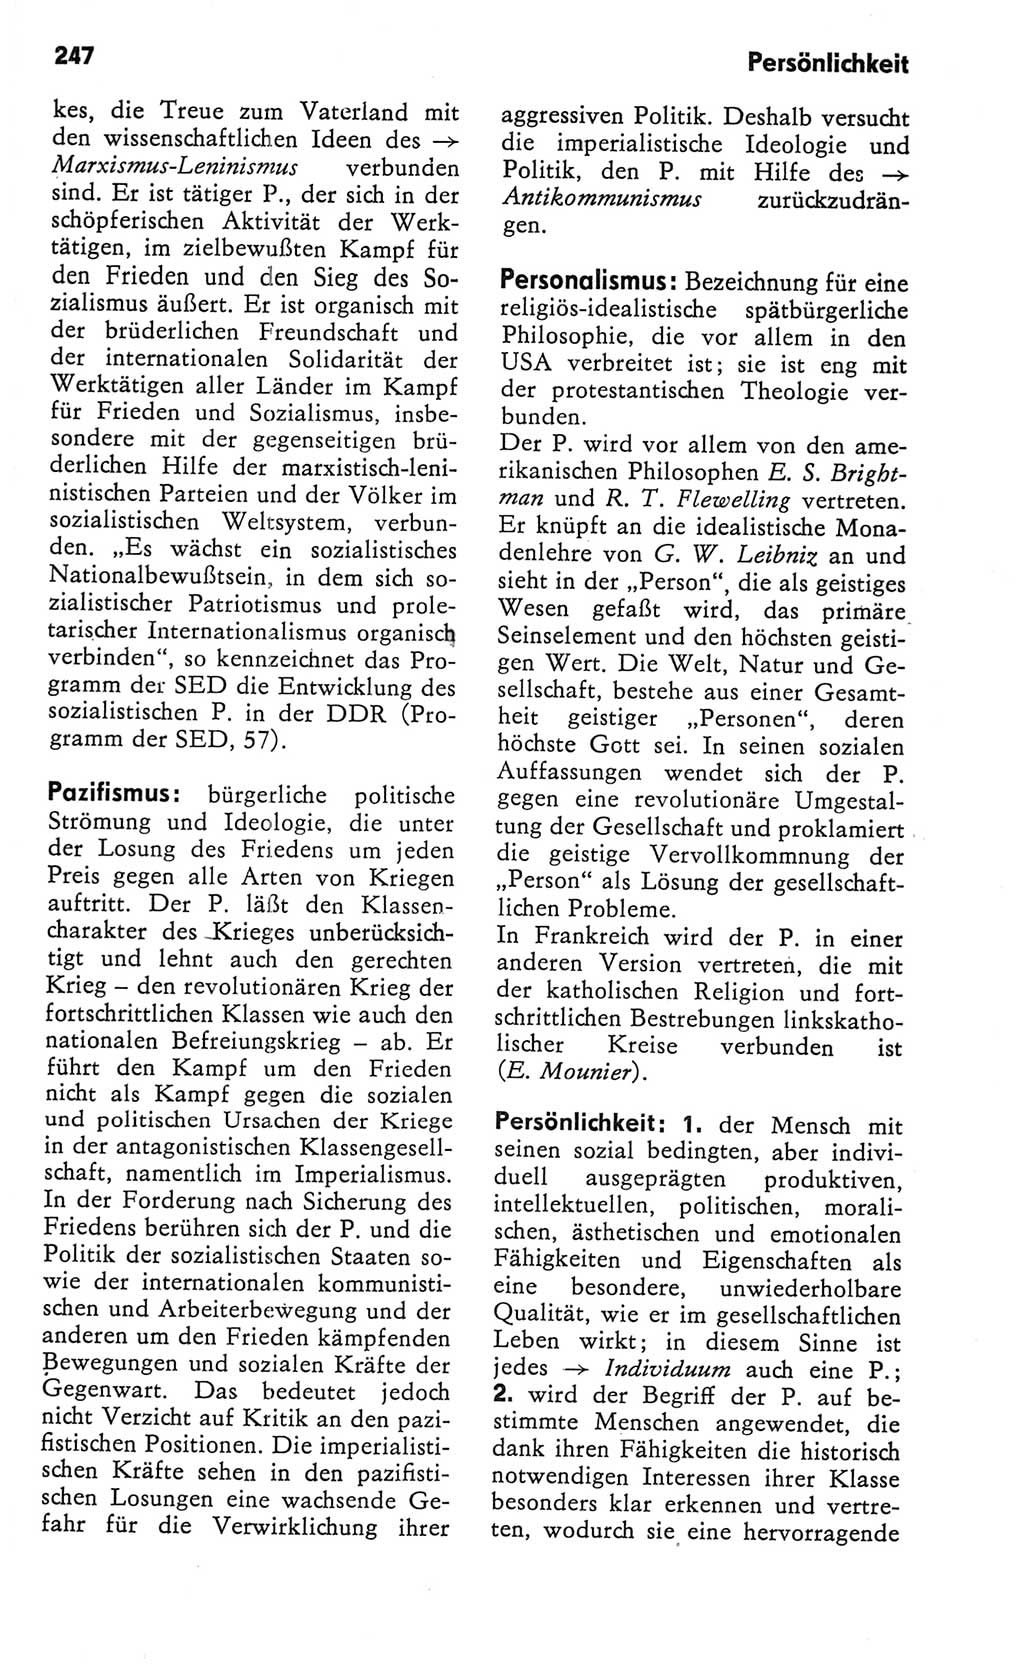 Kleines Wörterbuch der marxistisch-leninistischen Philosophie [Deutsche Demokratische Republik (DDR)] 1982, Seite 247 (Kl. Wb. ML Phil. DDR 1982, S. 247)